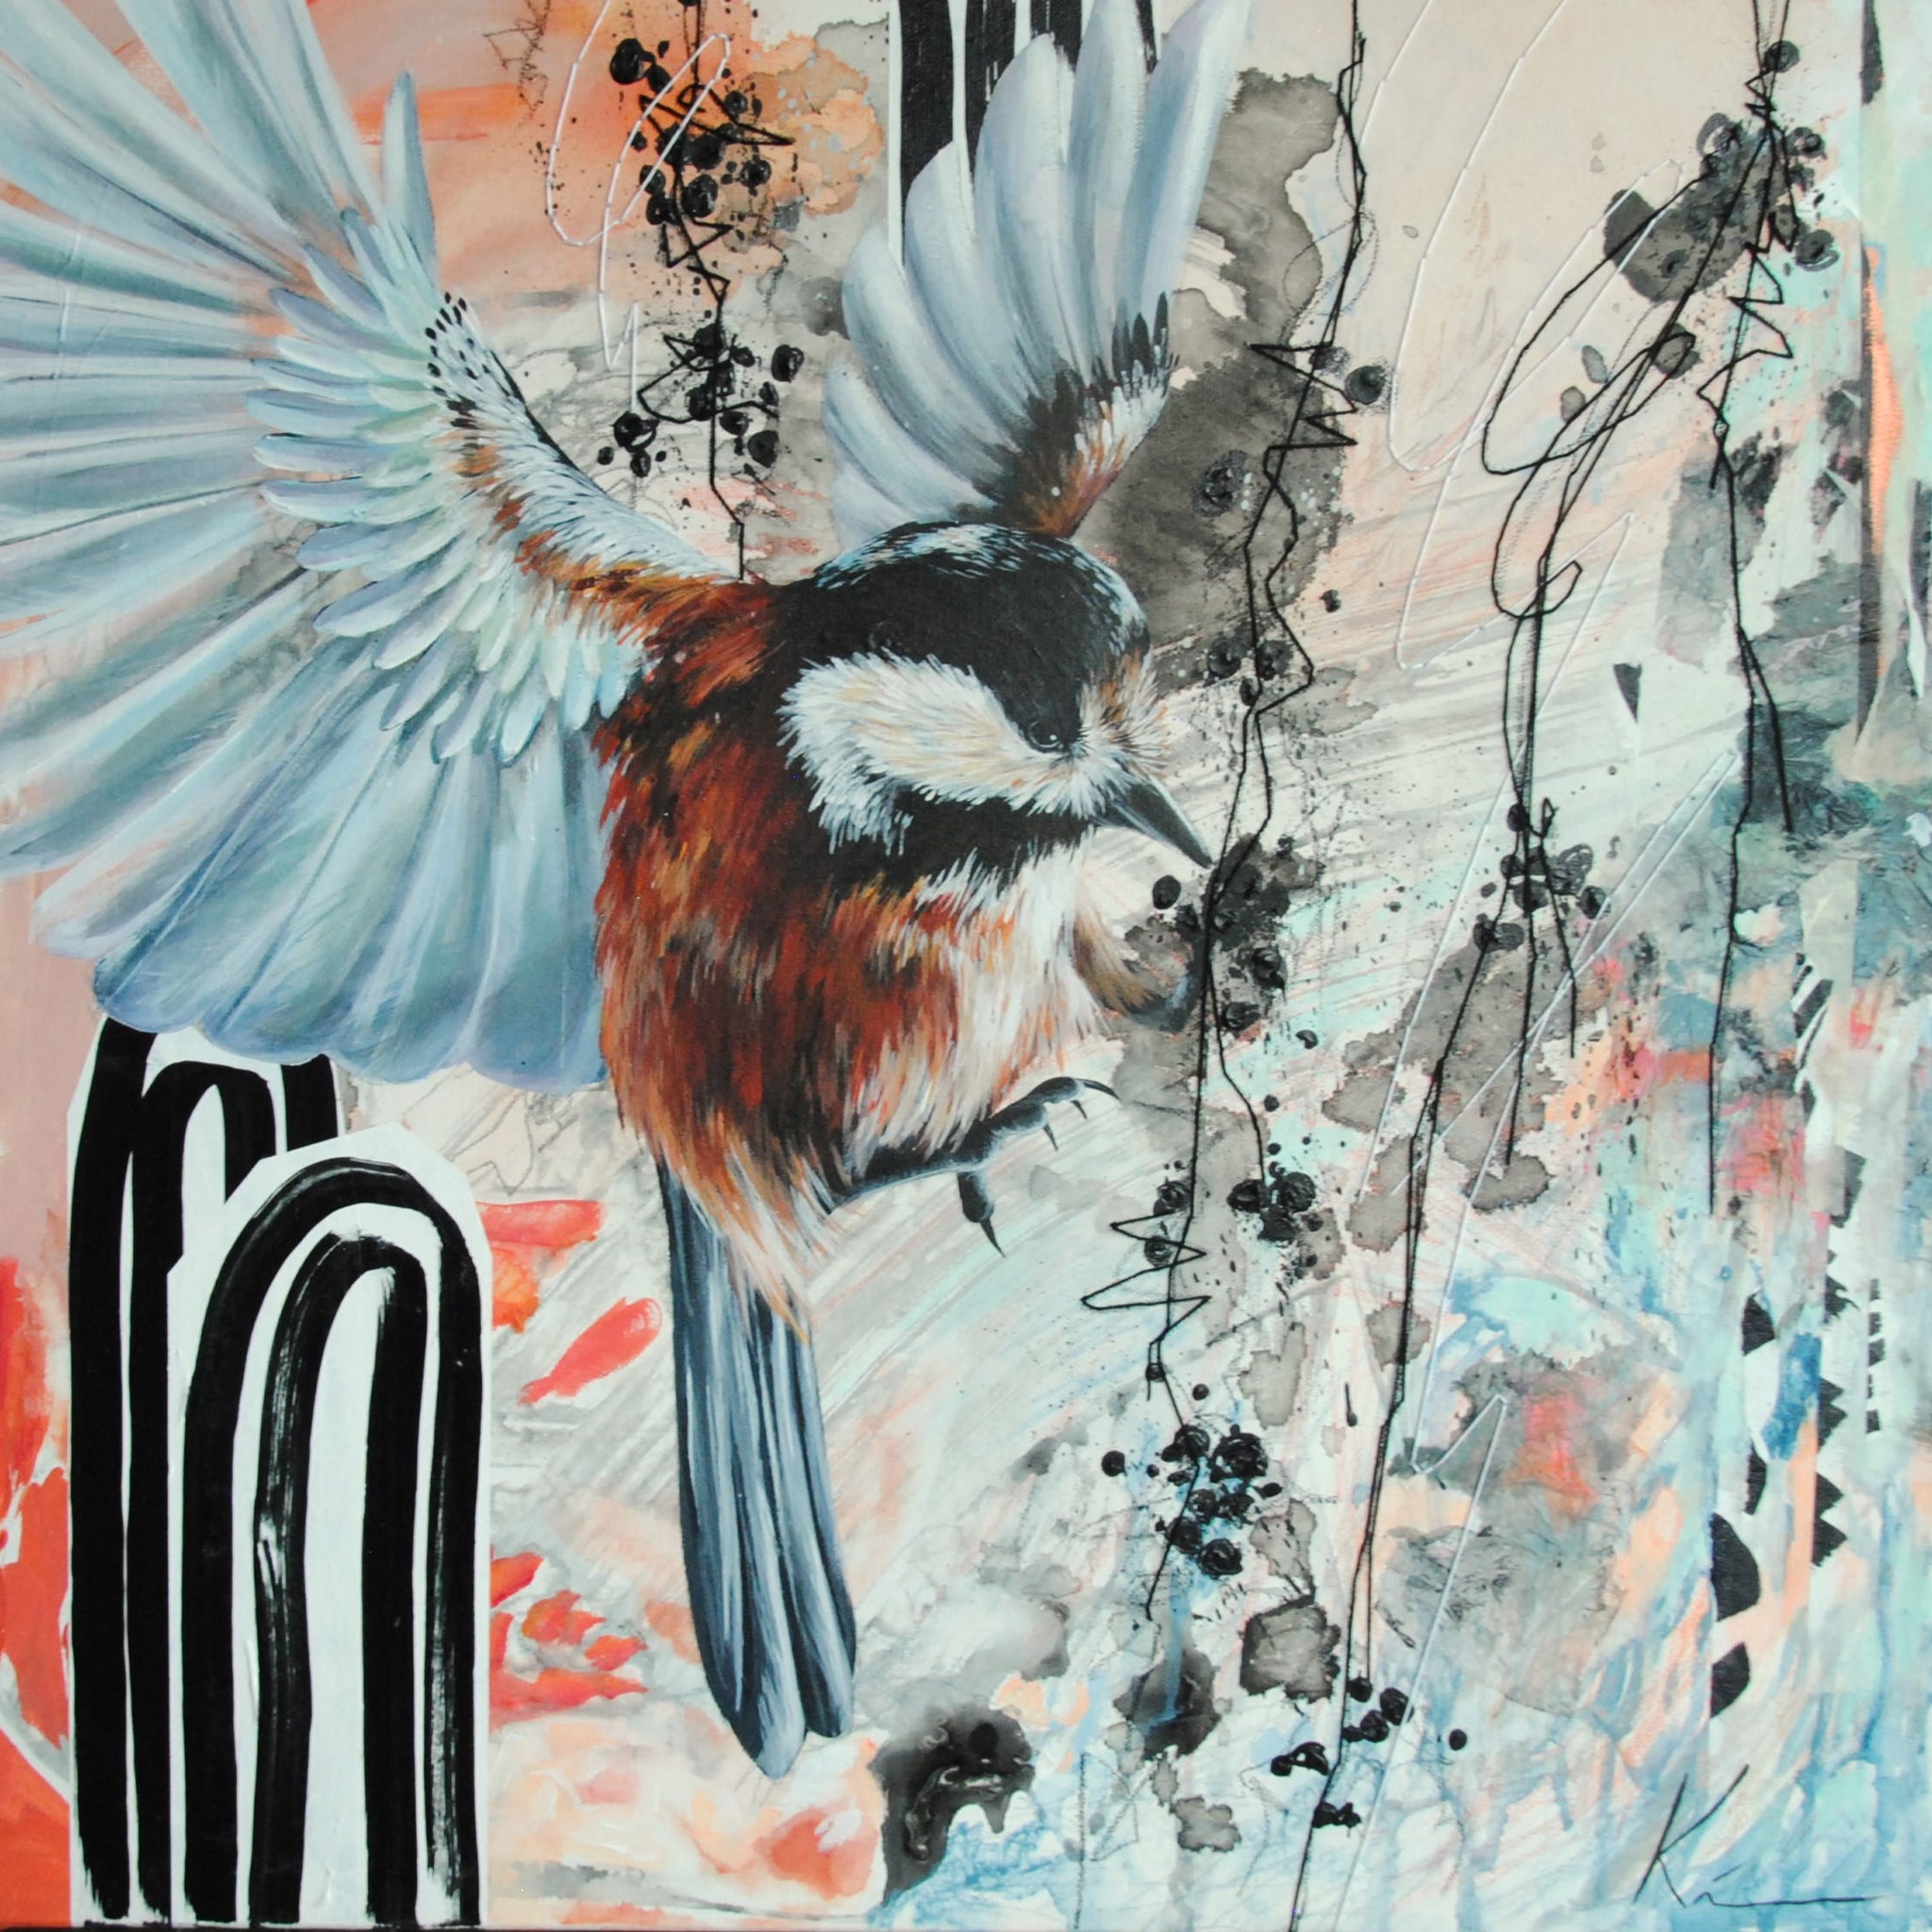 Peinte à l'acrylique, une mésange vole sur un fond abstrait orangé, avec des arcs-en-ciel en arrière-plan. Des traits noirs brodés rappellent des branches avec des petits fruits